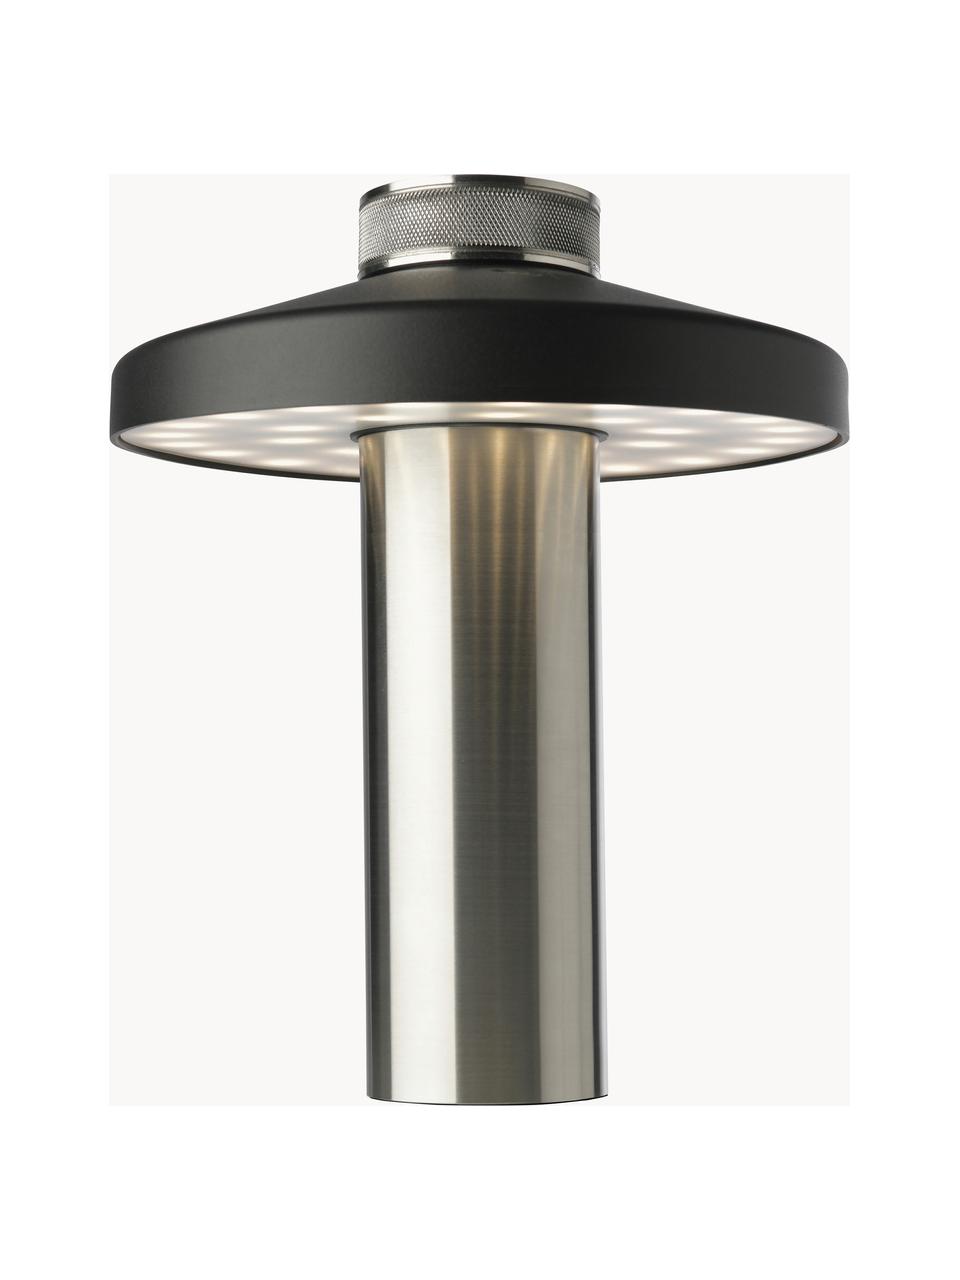 Kleine mobile LED-Aussenleuchte Turn, dimmbar, Schwarz, Silberfarben, Ø 18 x H 22 cm